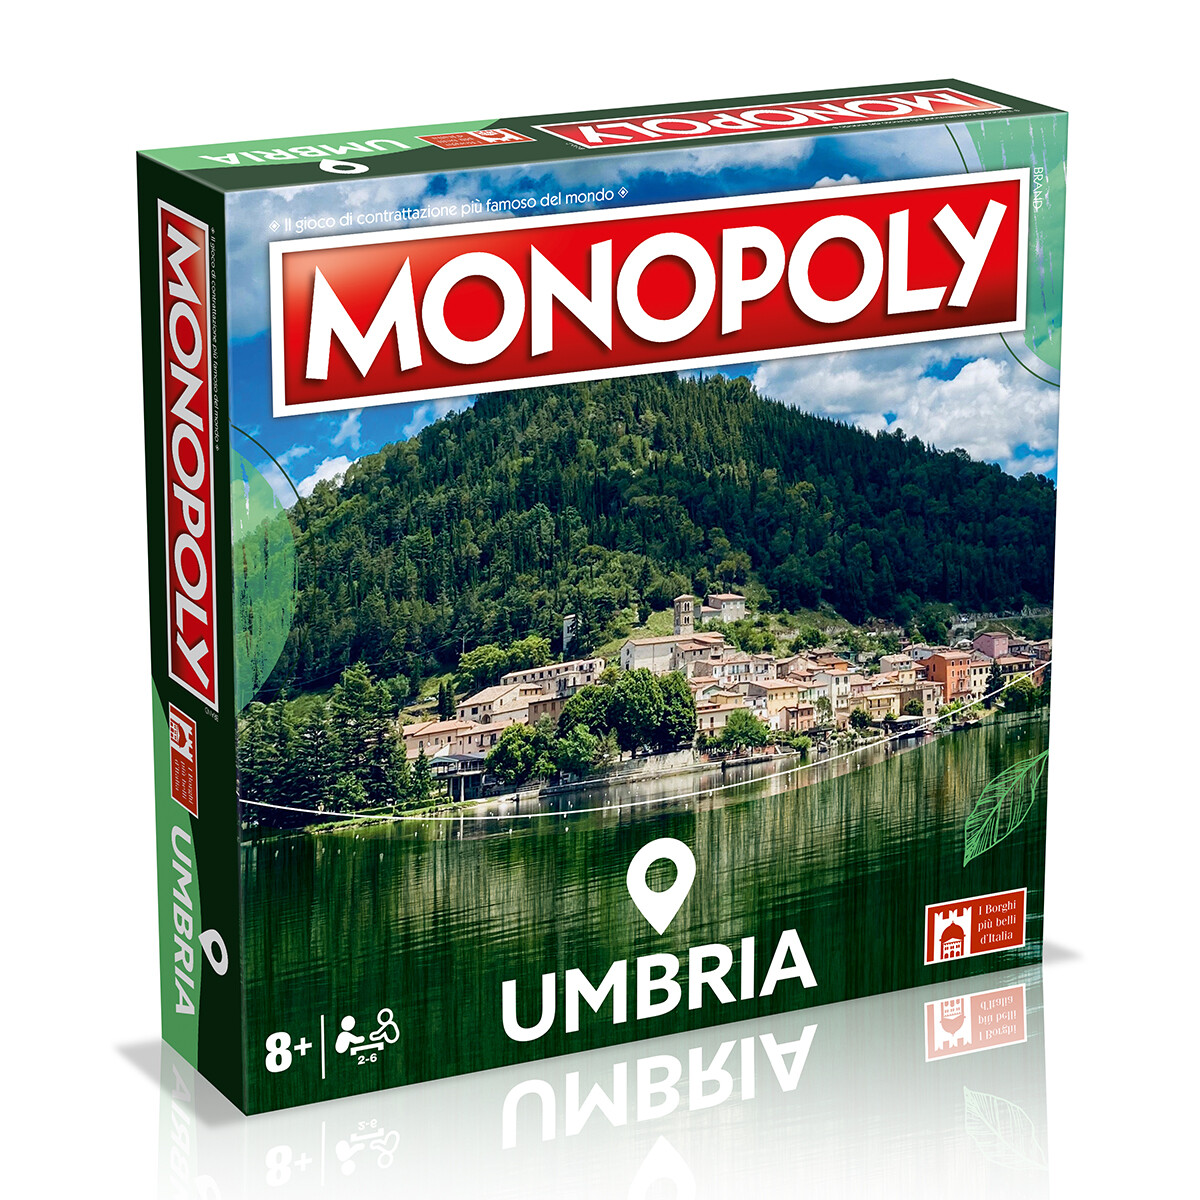 Monopoly - edizione i borghi più belli d'itallia umbria - MONOPOLY